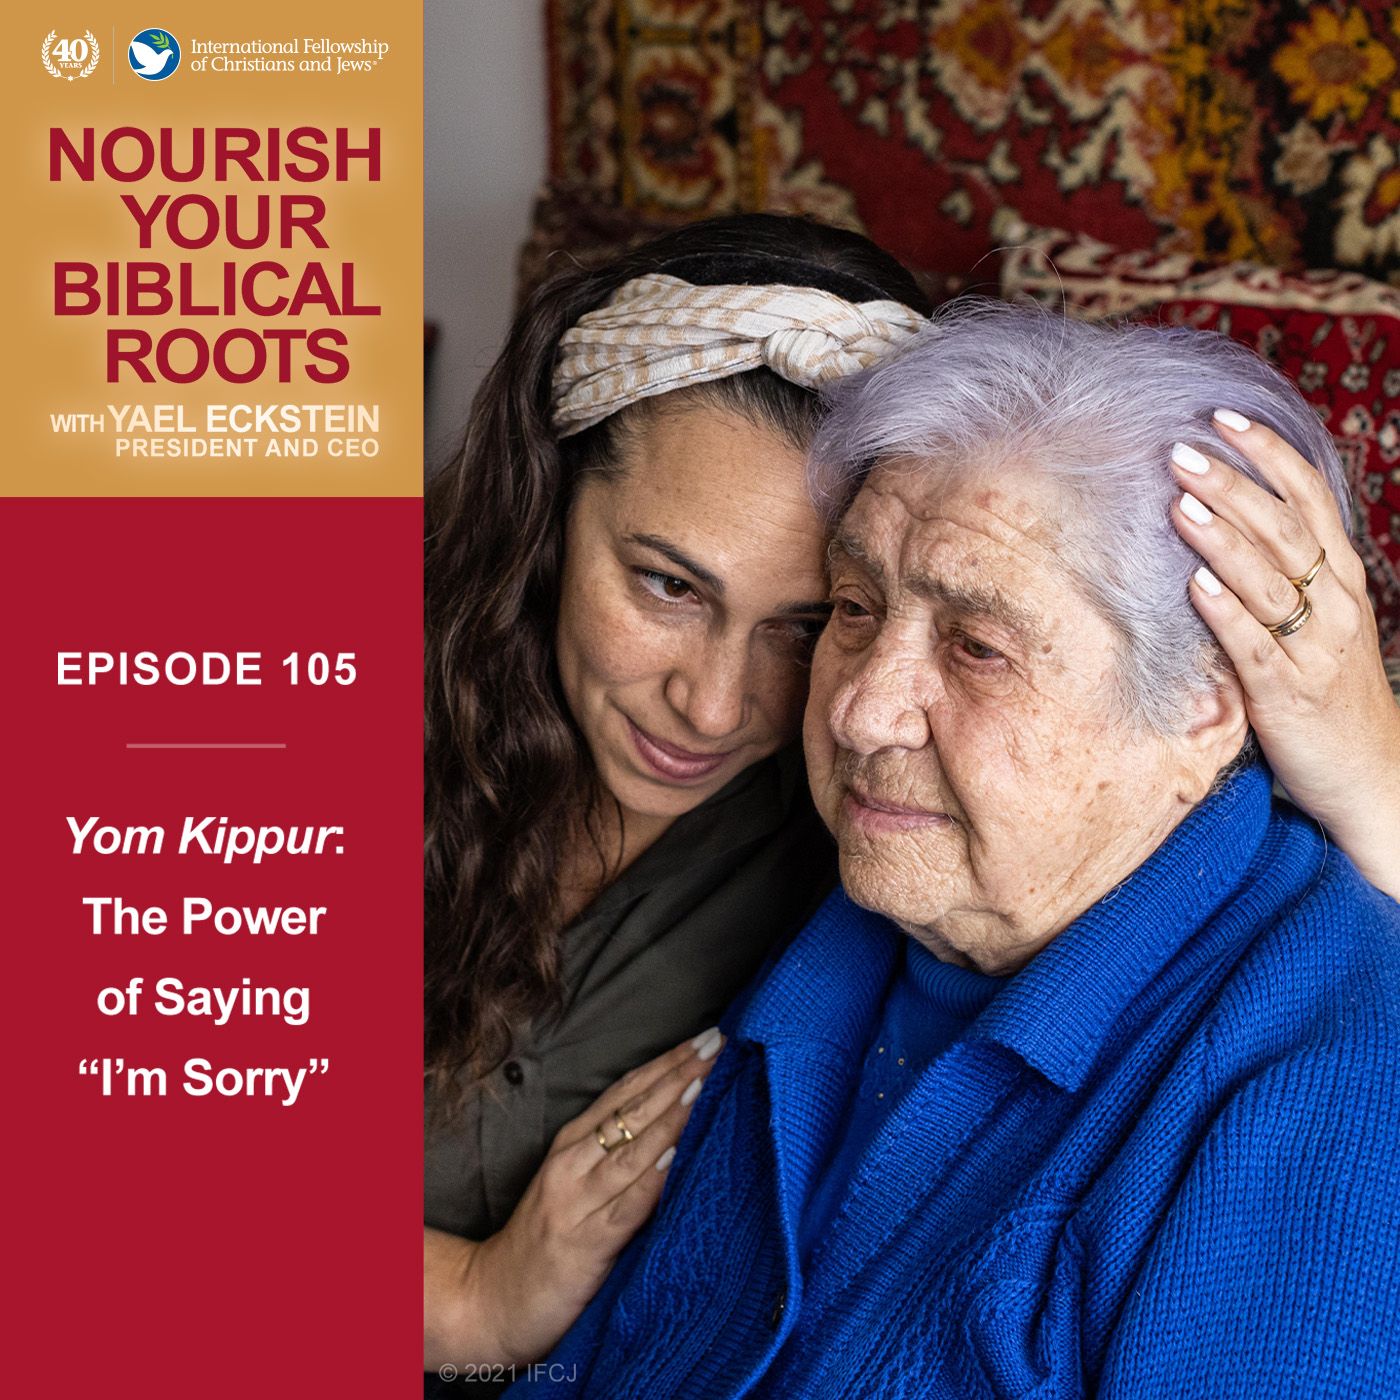 Yom Kippur: The Power of Saying 